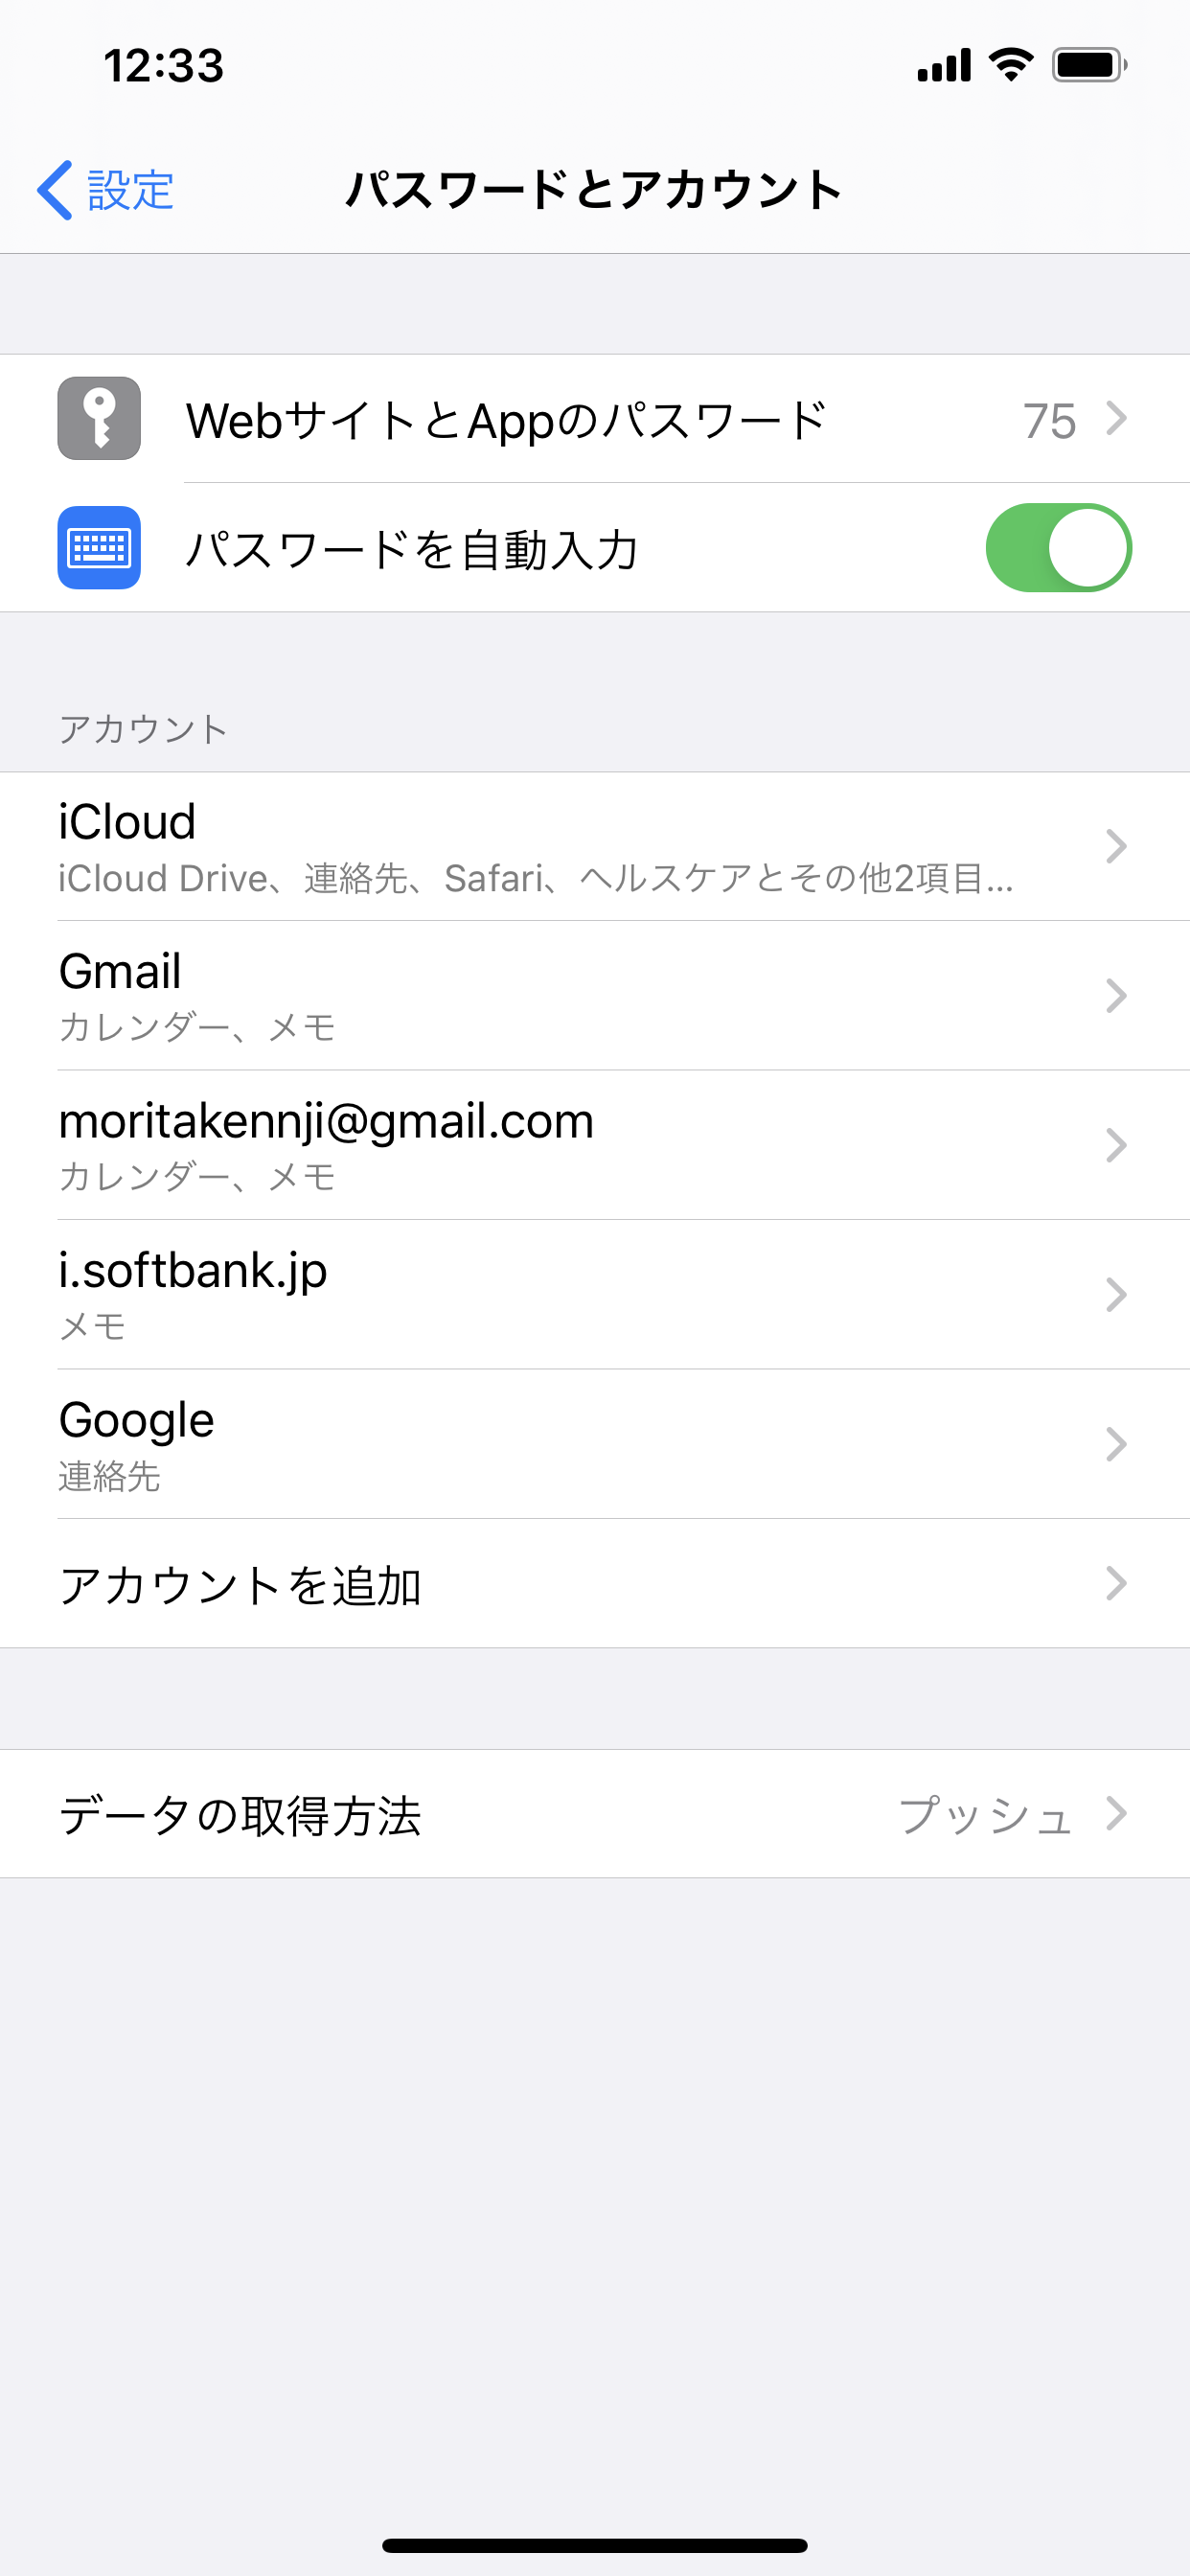 i.softbank.jp。があった。パスワードが正しくありません。IMAPアカウント"i.softbank.jp"のパスワード入力